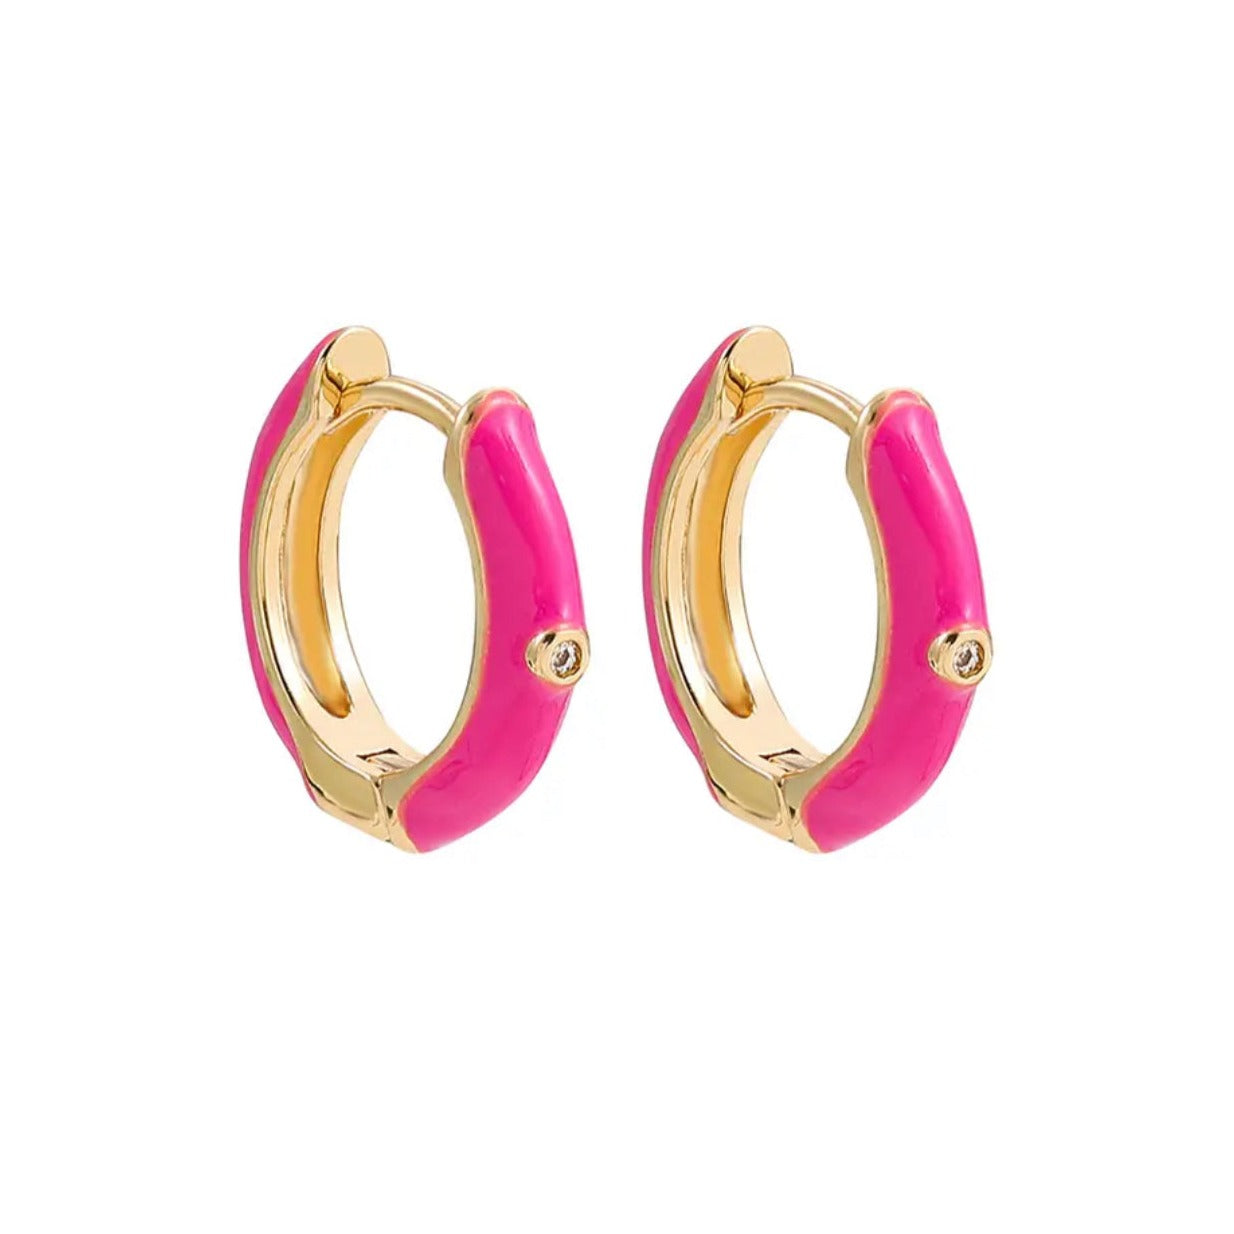 Neon pink huggie hoop earrings